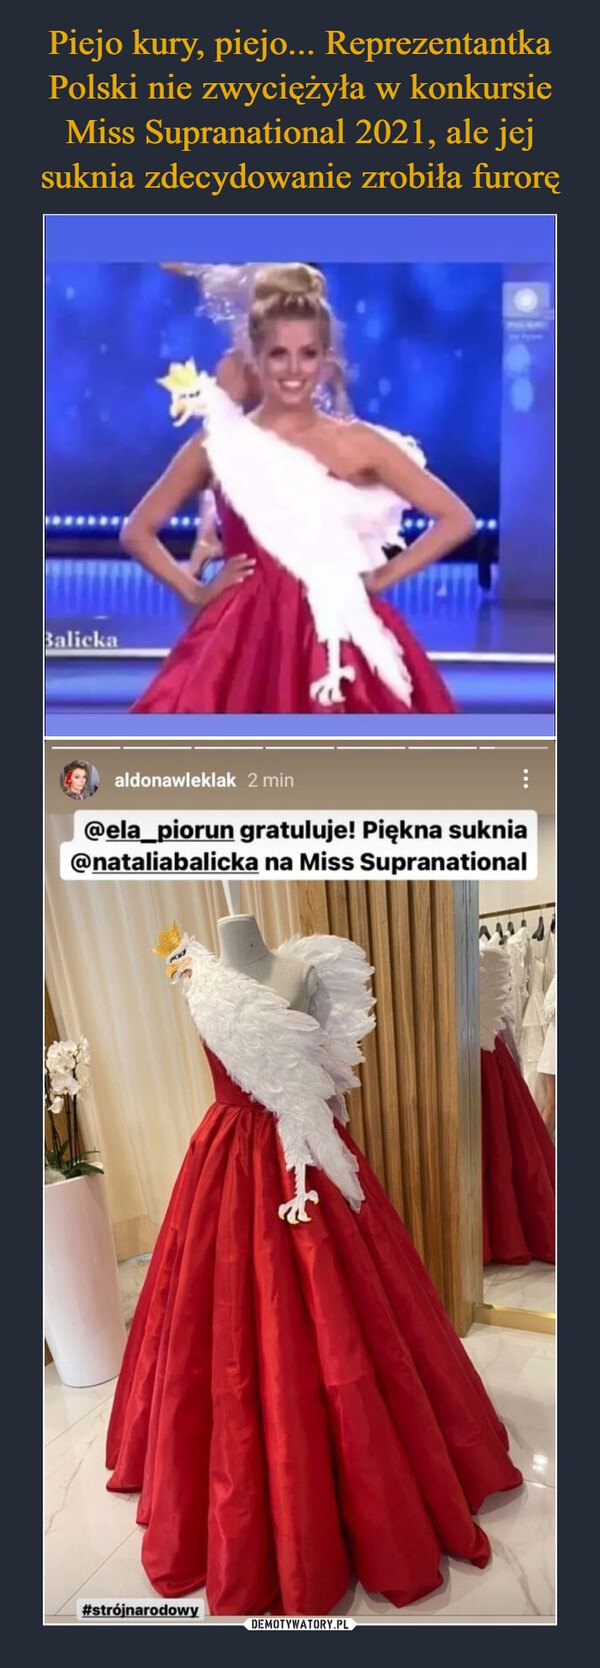 Piejo kury, piejo... Reprezentantka Polski nie zwyciężyła w konkursie Miss Supranational 2021, ale jej suknia zdecydowanie zrobiła furorę